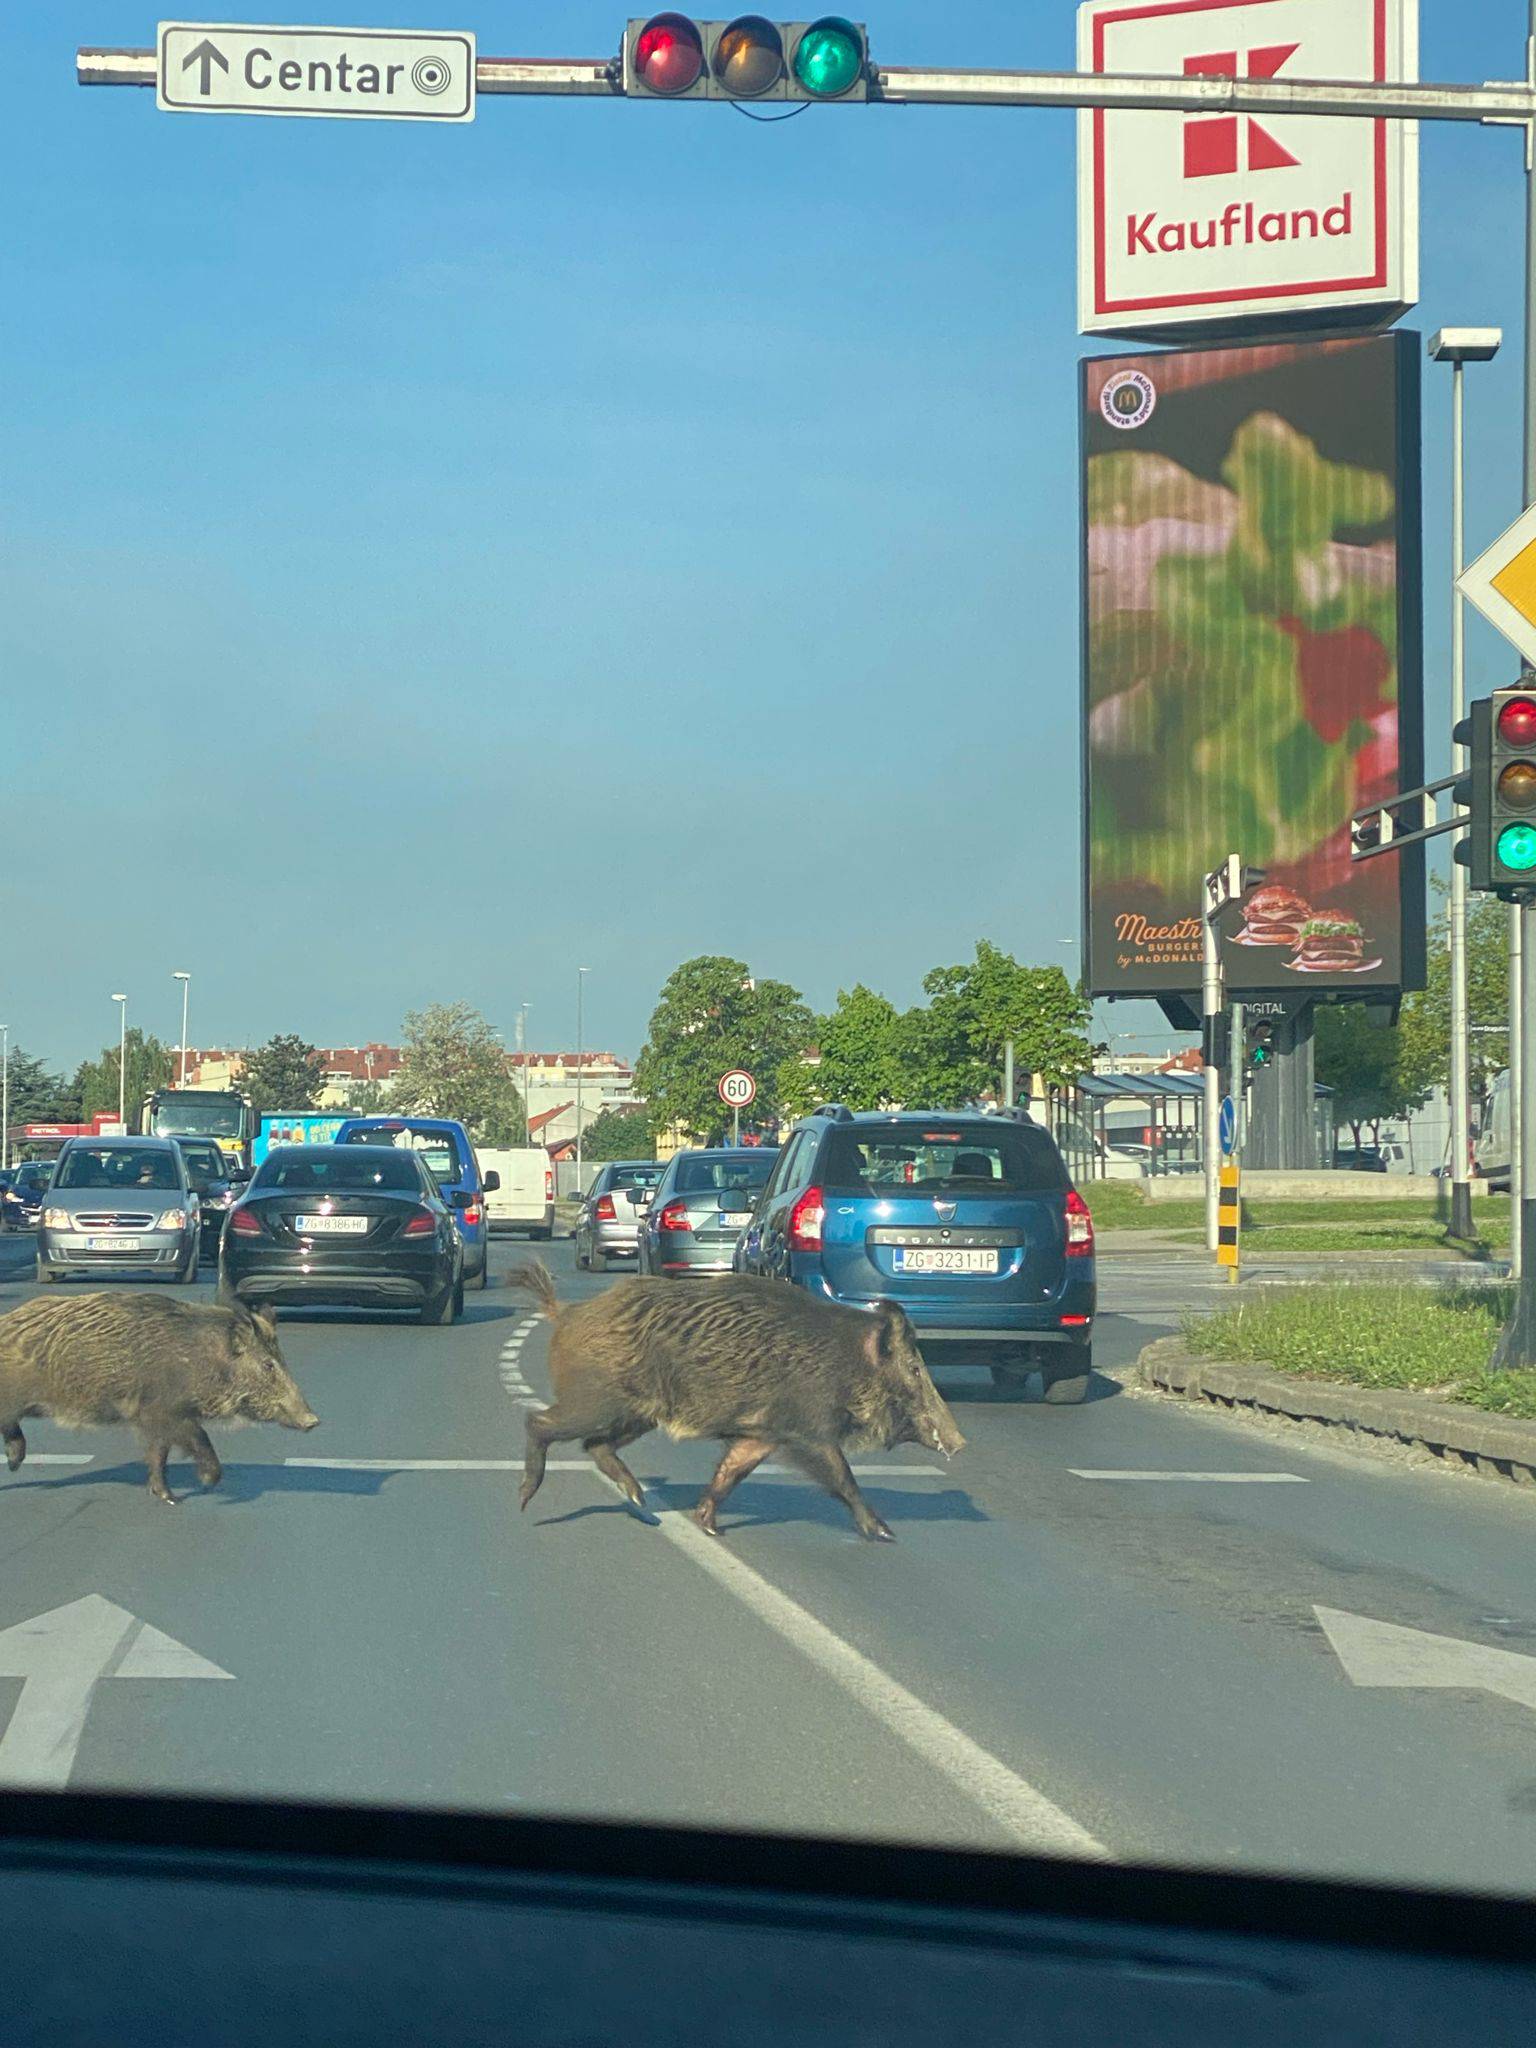 VIDEO Divlje svinje blokirale promet u Dubravi: 'Očito im nije prvi put, ne plaše se buke...'